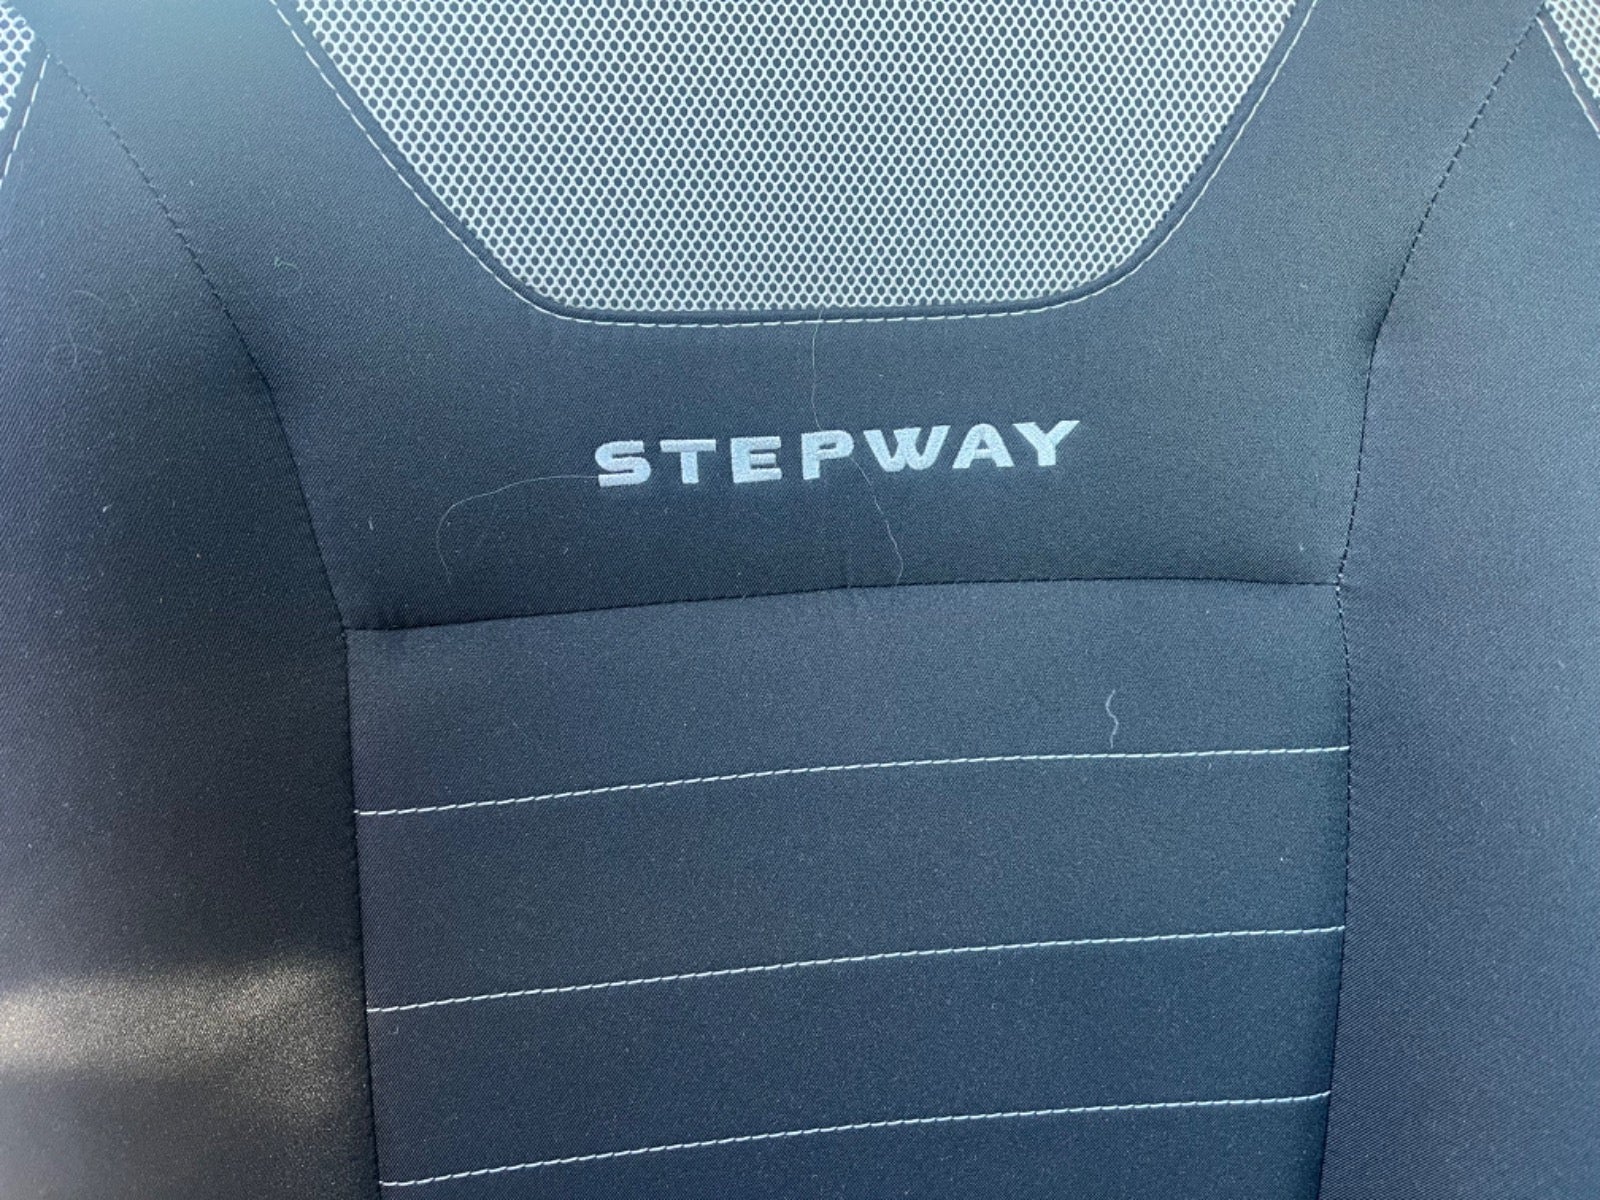 Dacia Sandero Stepway 2018